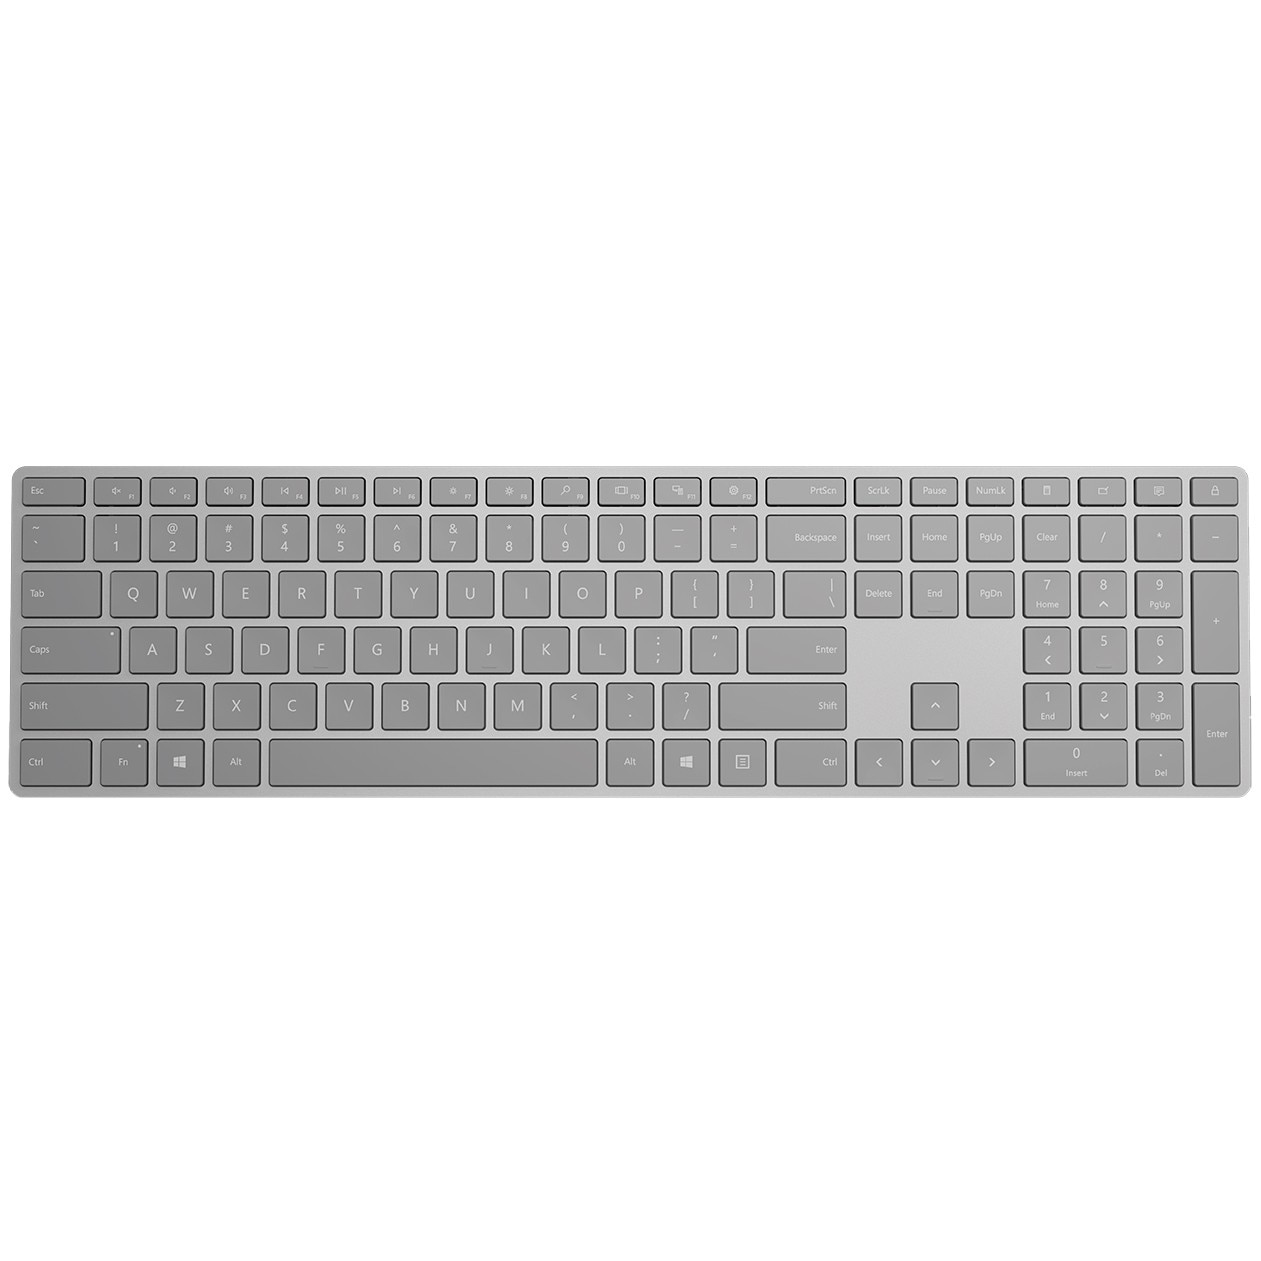 Microsoft Surface trådløst tastatur (lys grå) - Elkjøp